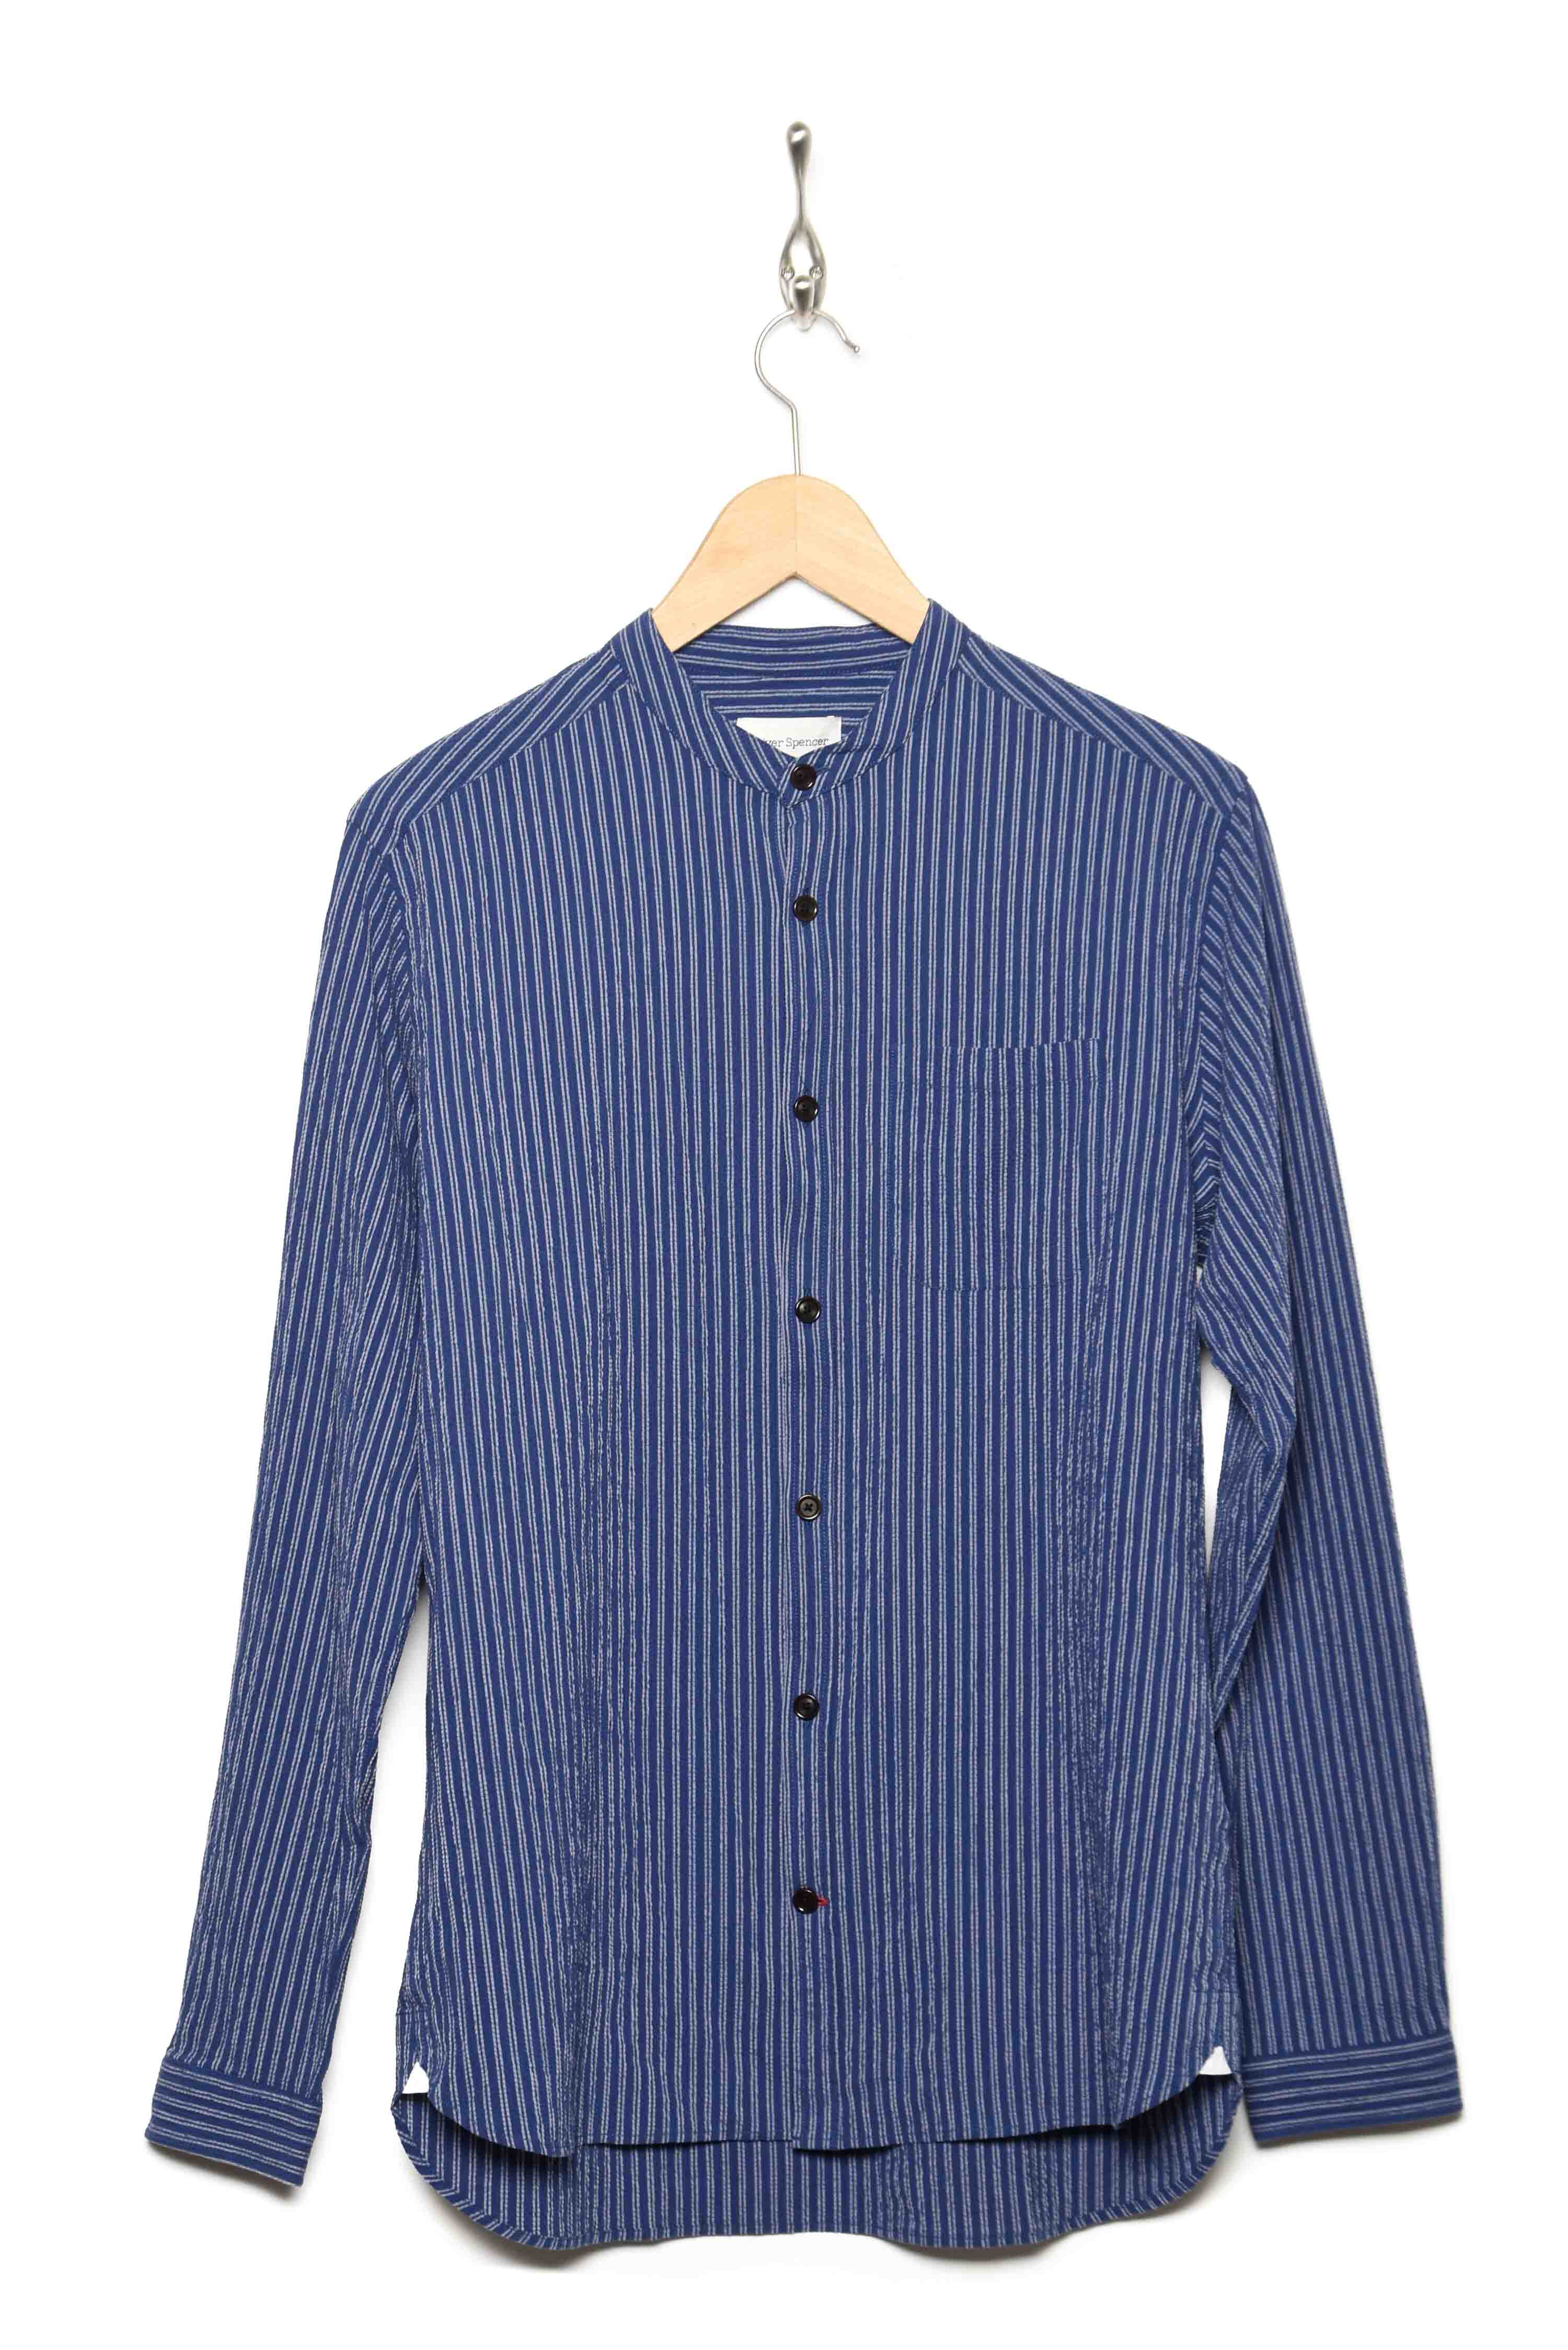 Oliver Spencer Grandad Shirt rowley blue